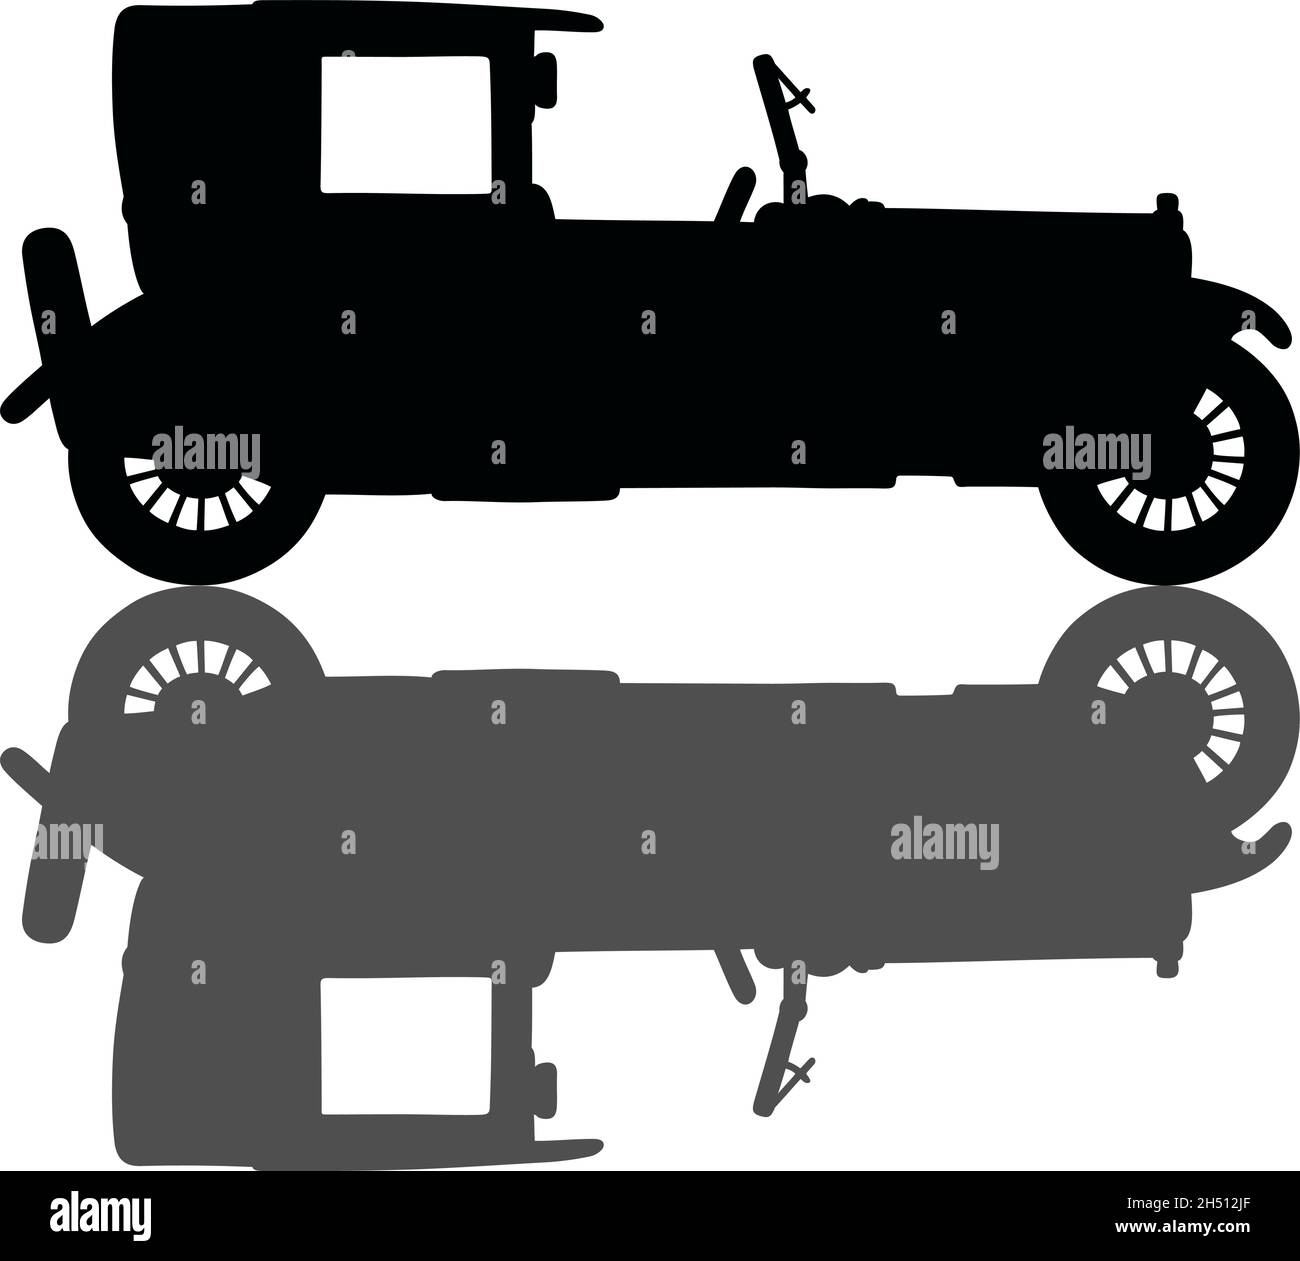 Disegno a mano di una silhouette nera di una limousine vintage con un'ombra Illustrazione Vettoriale